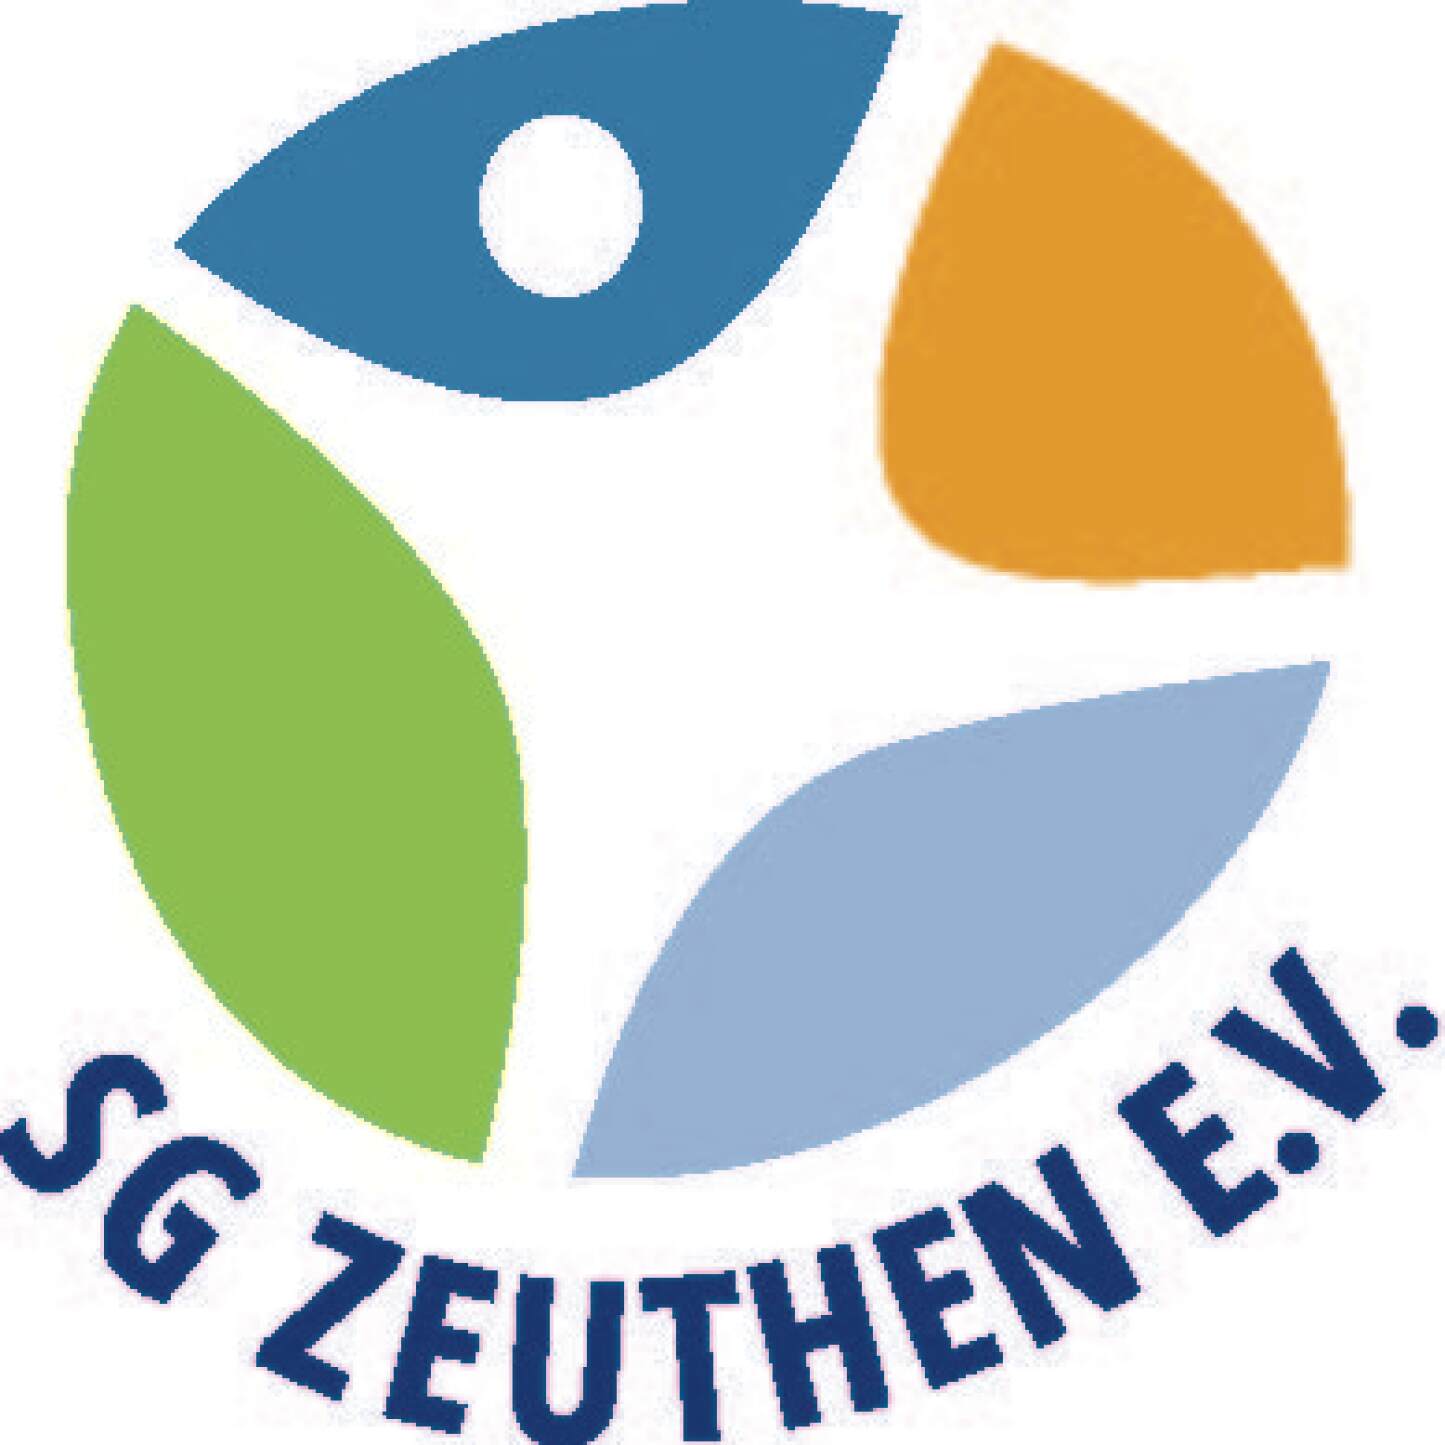 Einrichtung SG Zeuthen Logo.jpg